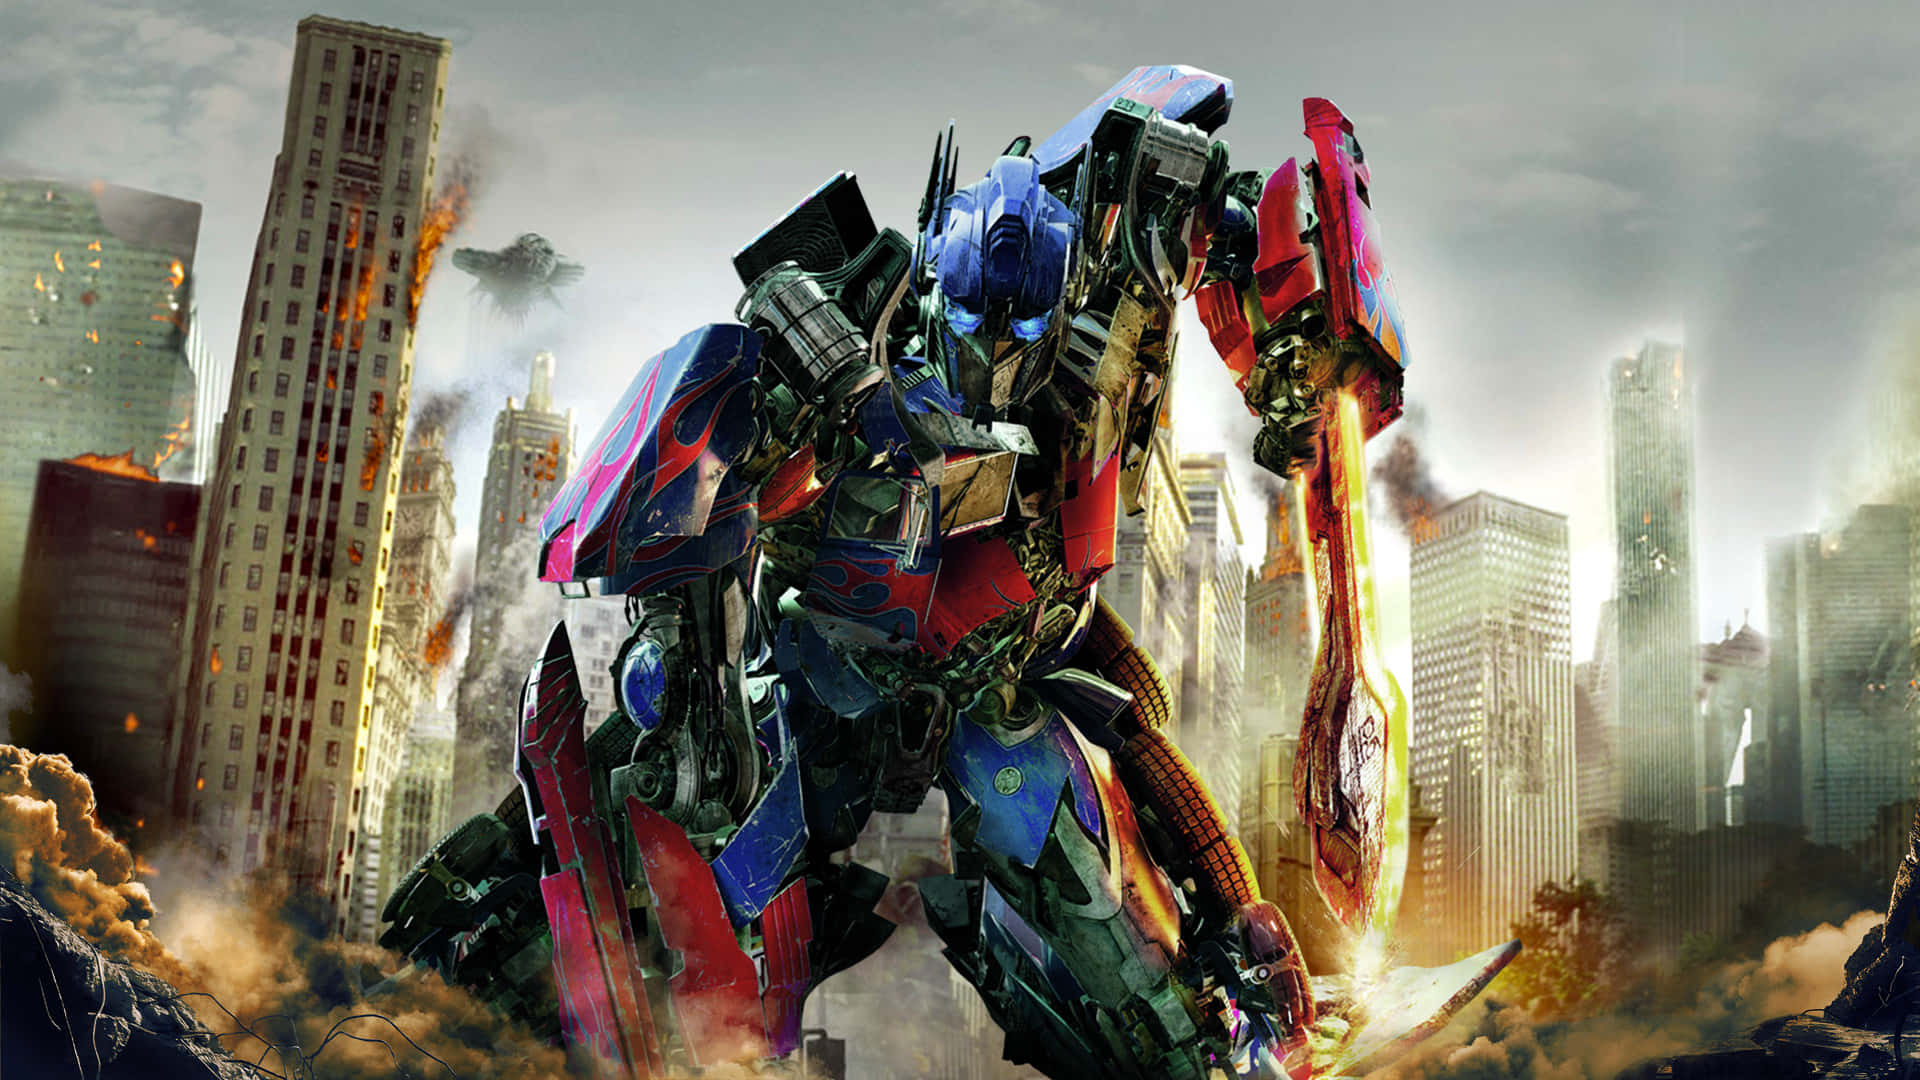 Dieactiongeladene Kinofilm-franchise, Transformers